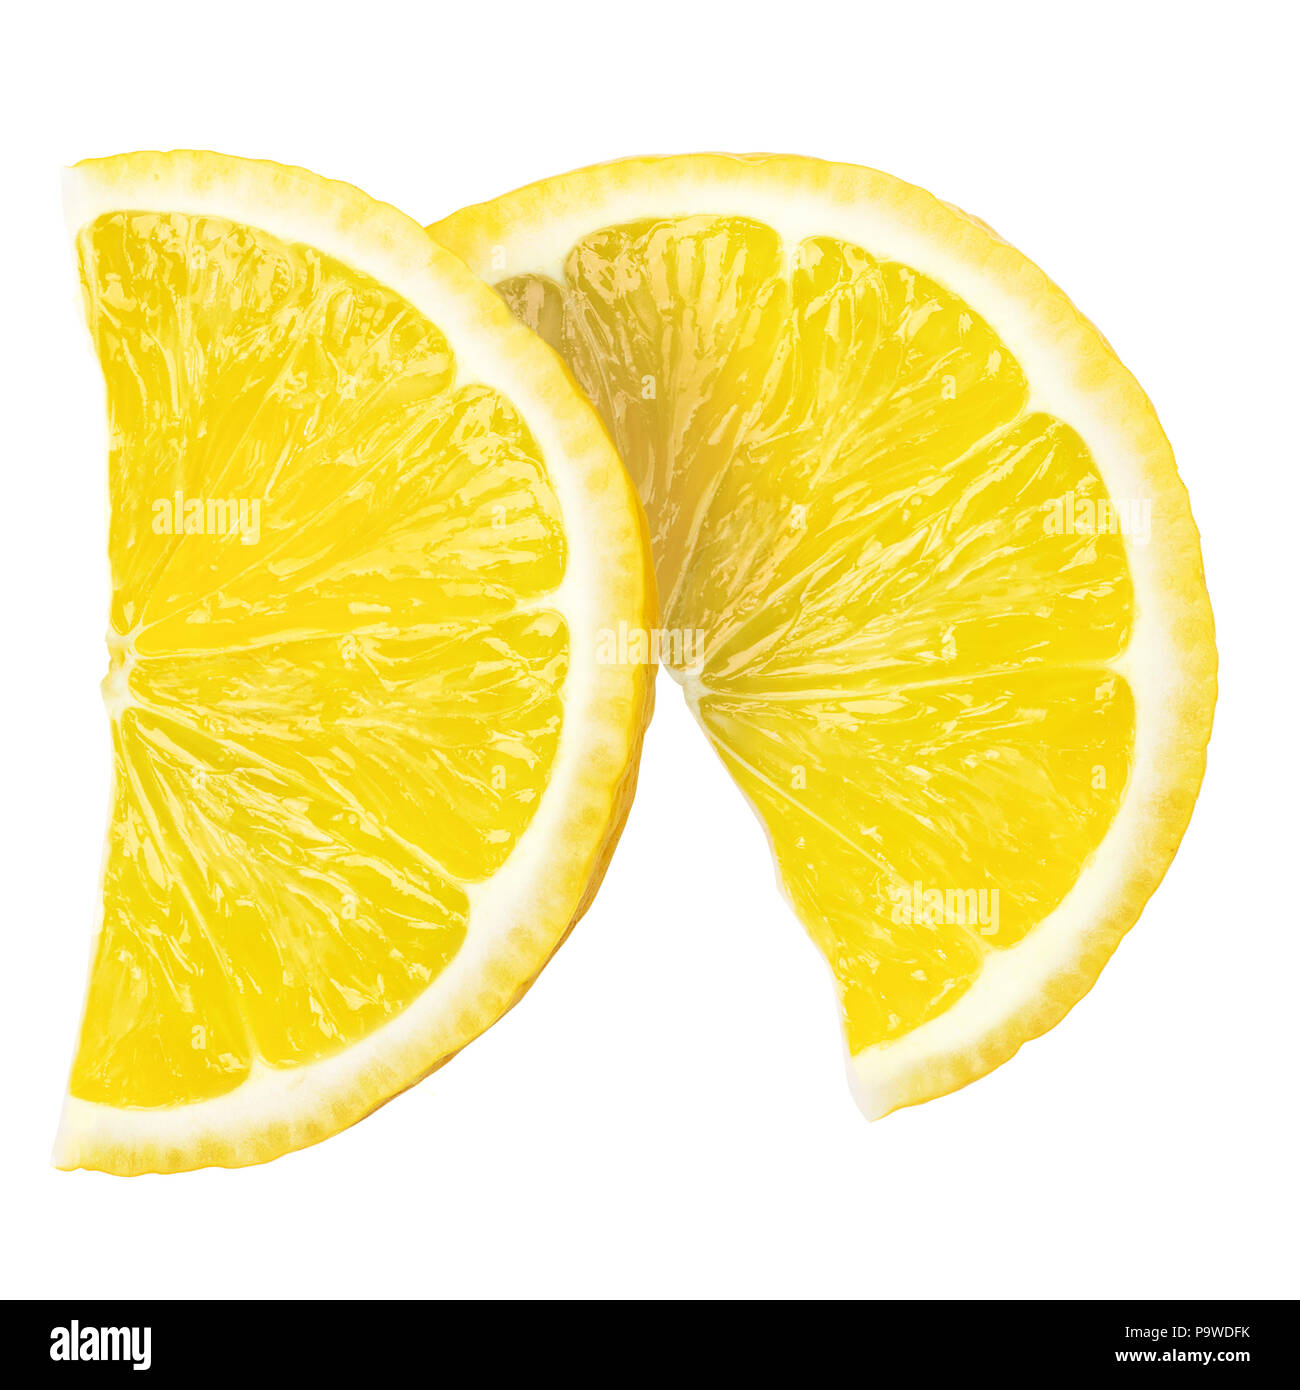 Deux rondelles de citron frais juteux, chemin, on white background Banque D'Images